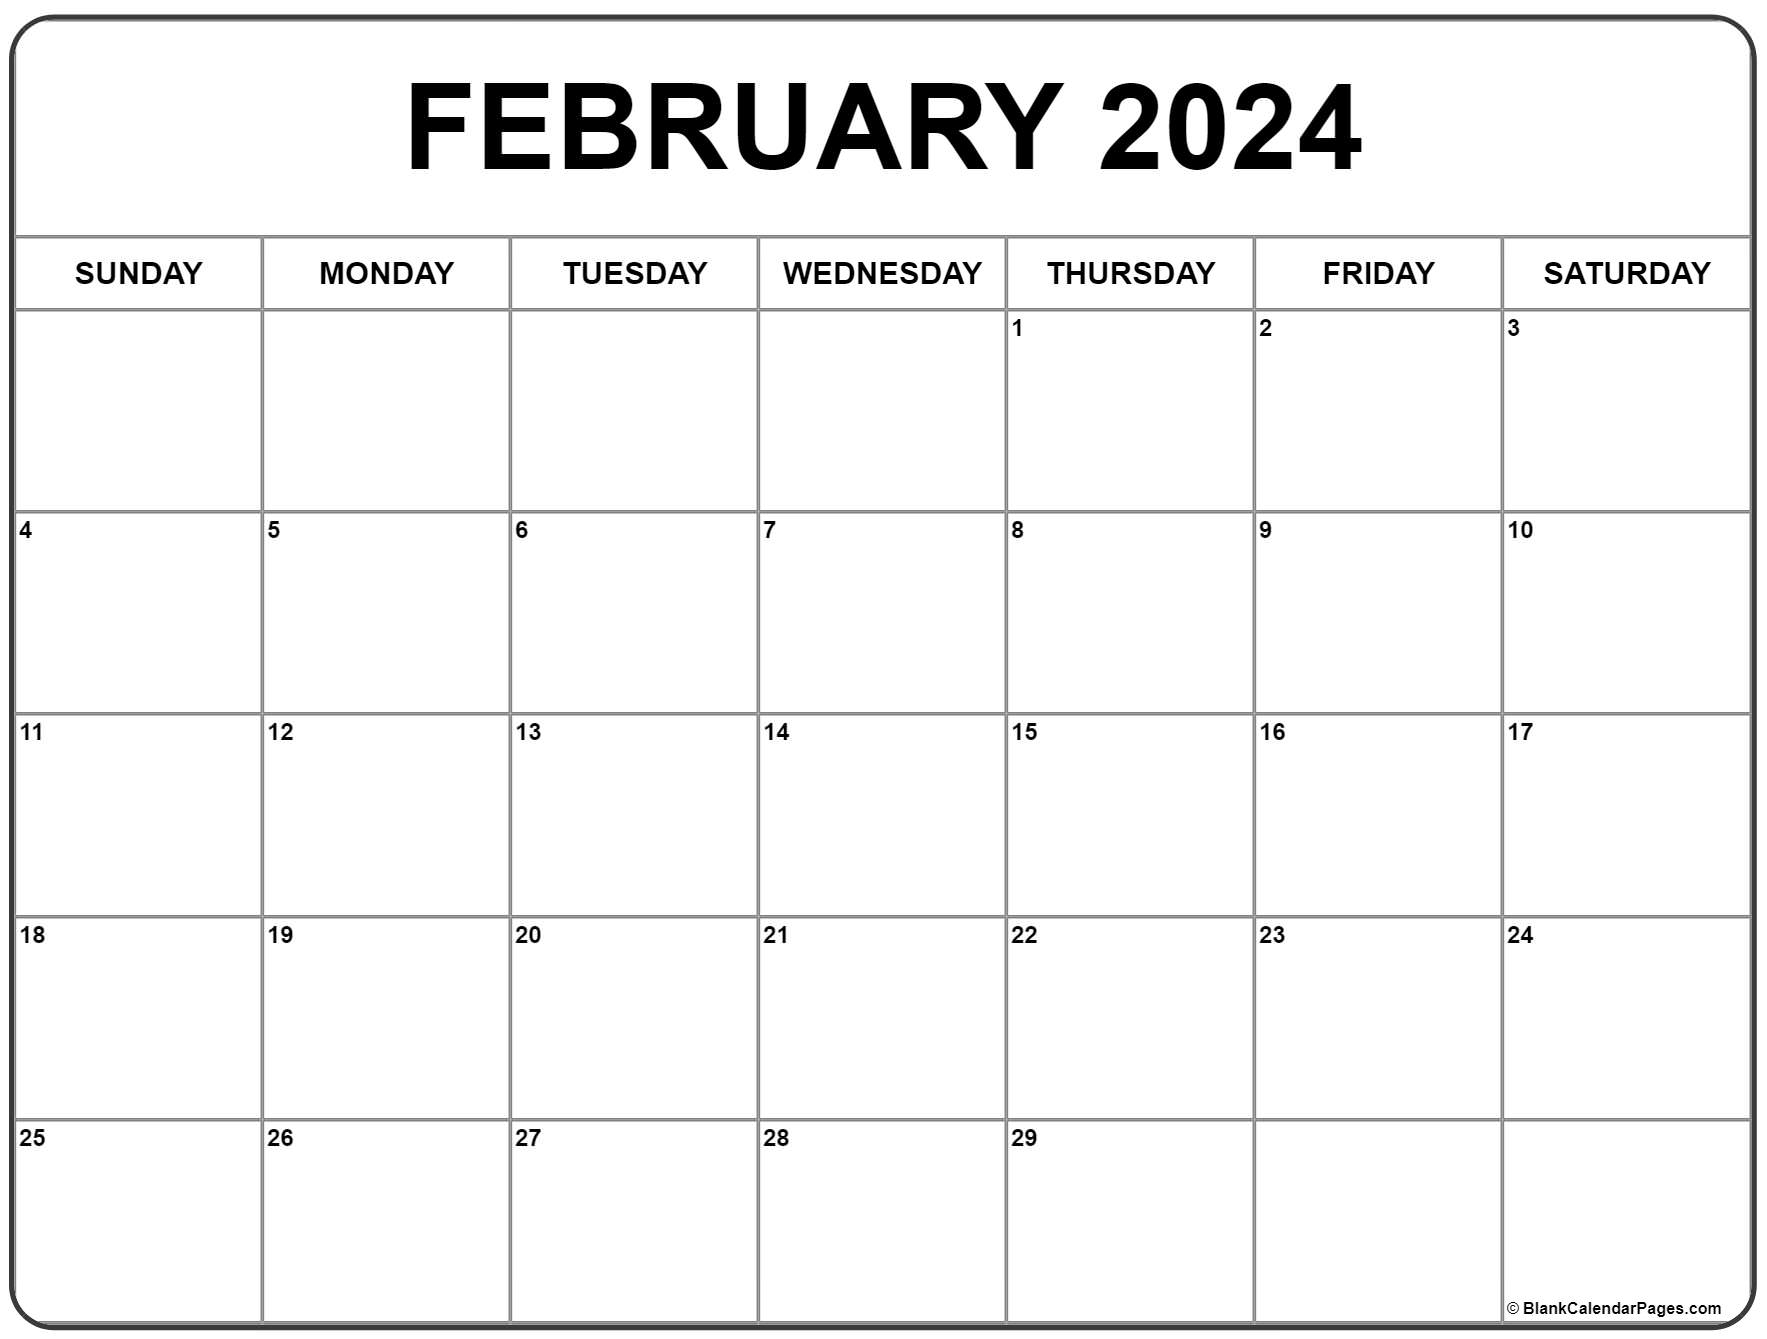 February 2024 Calendar | Free Printable Calendar for Free Printable February Calendar 2024